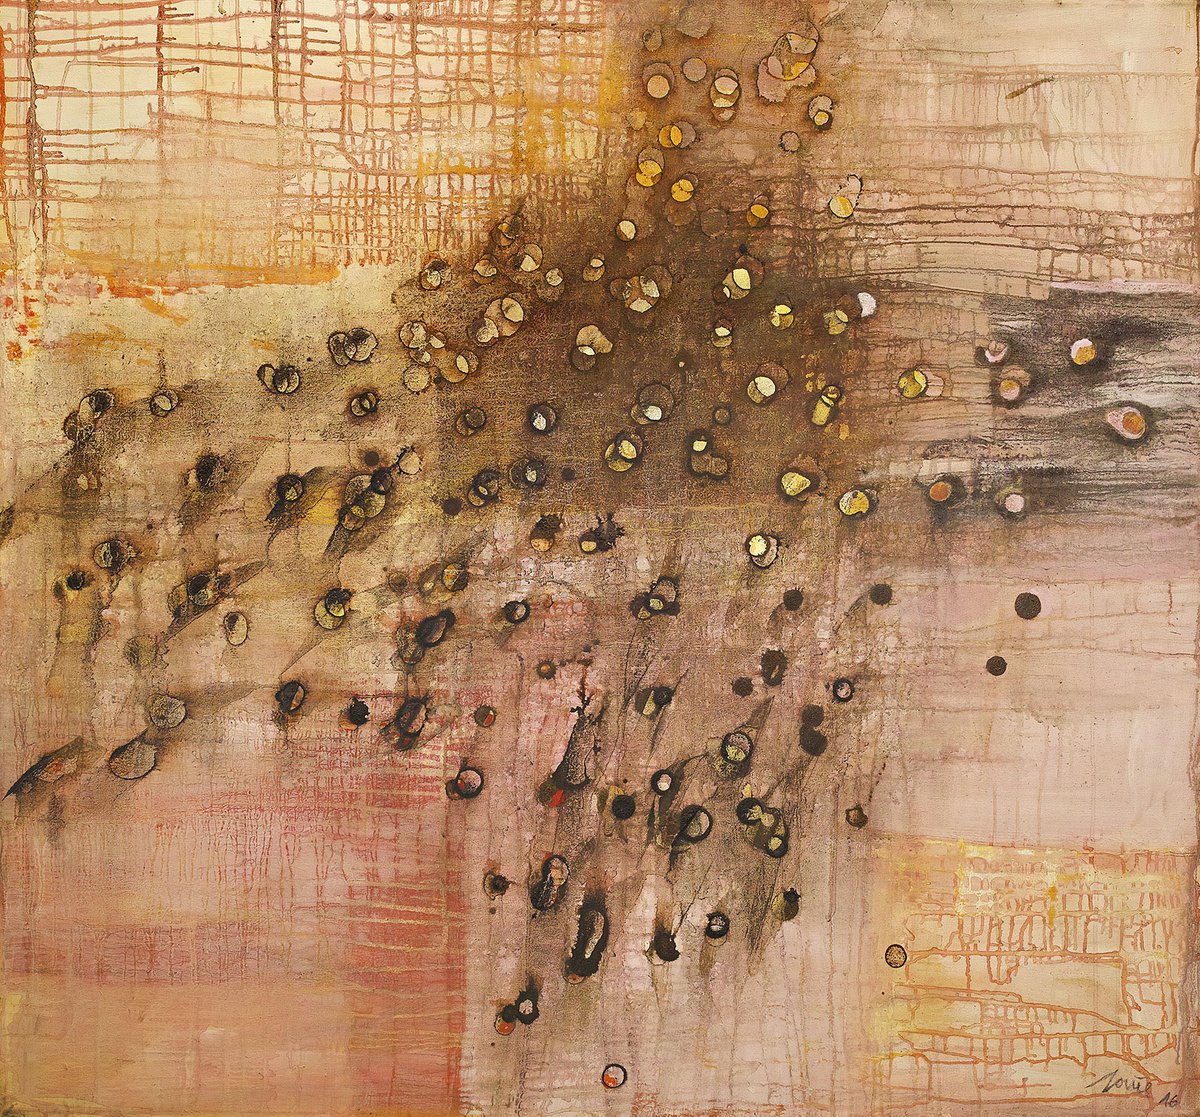 Swarm by Dieter Laue